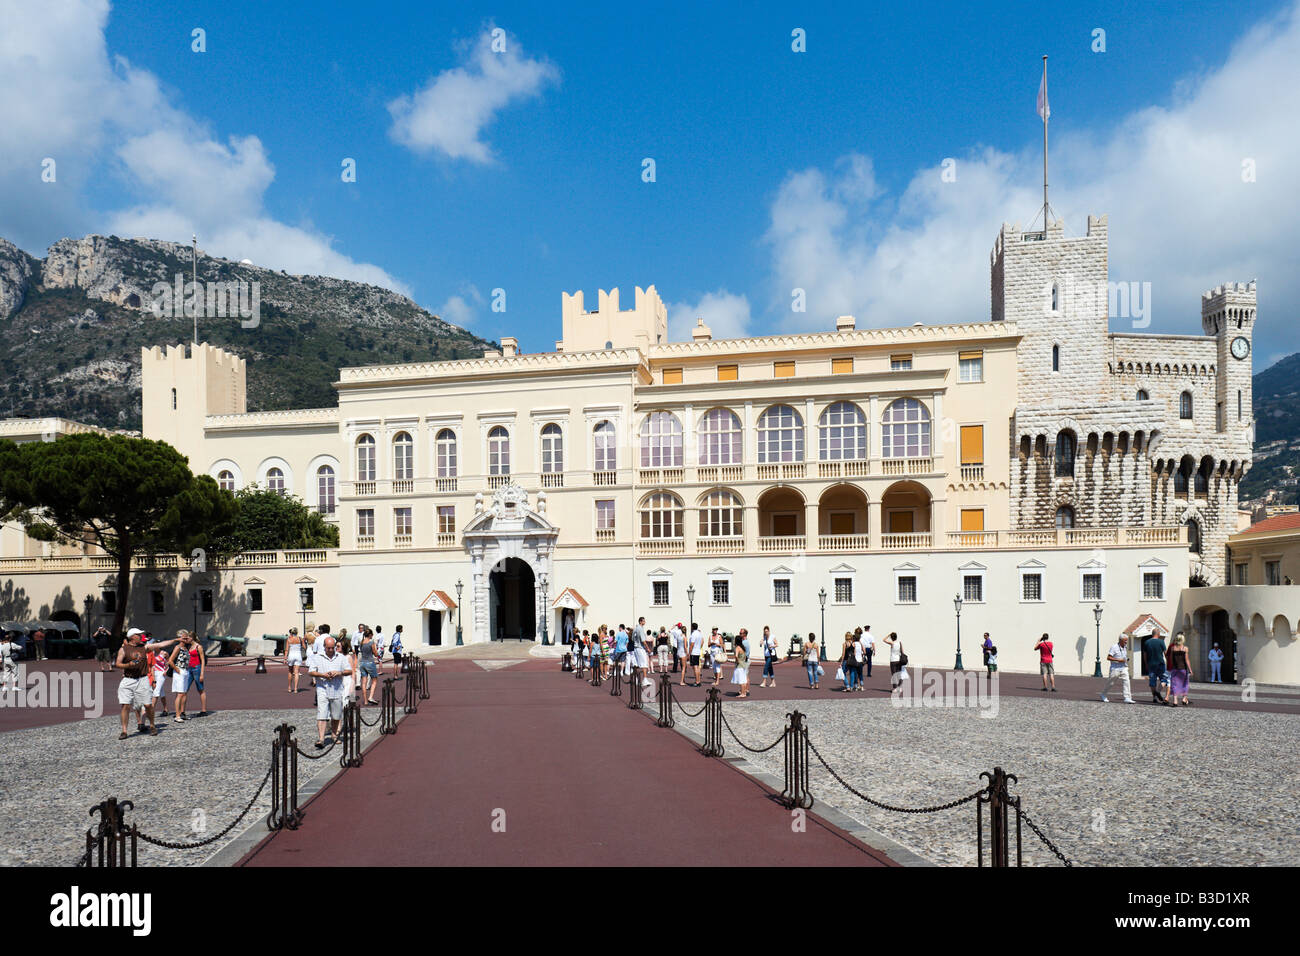 Der königliche Palast, Place du Palais, Monaco Ville, Monaco, Cote d ' Azur, Cote d ' Azur, Frankreich Stockfoto